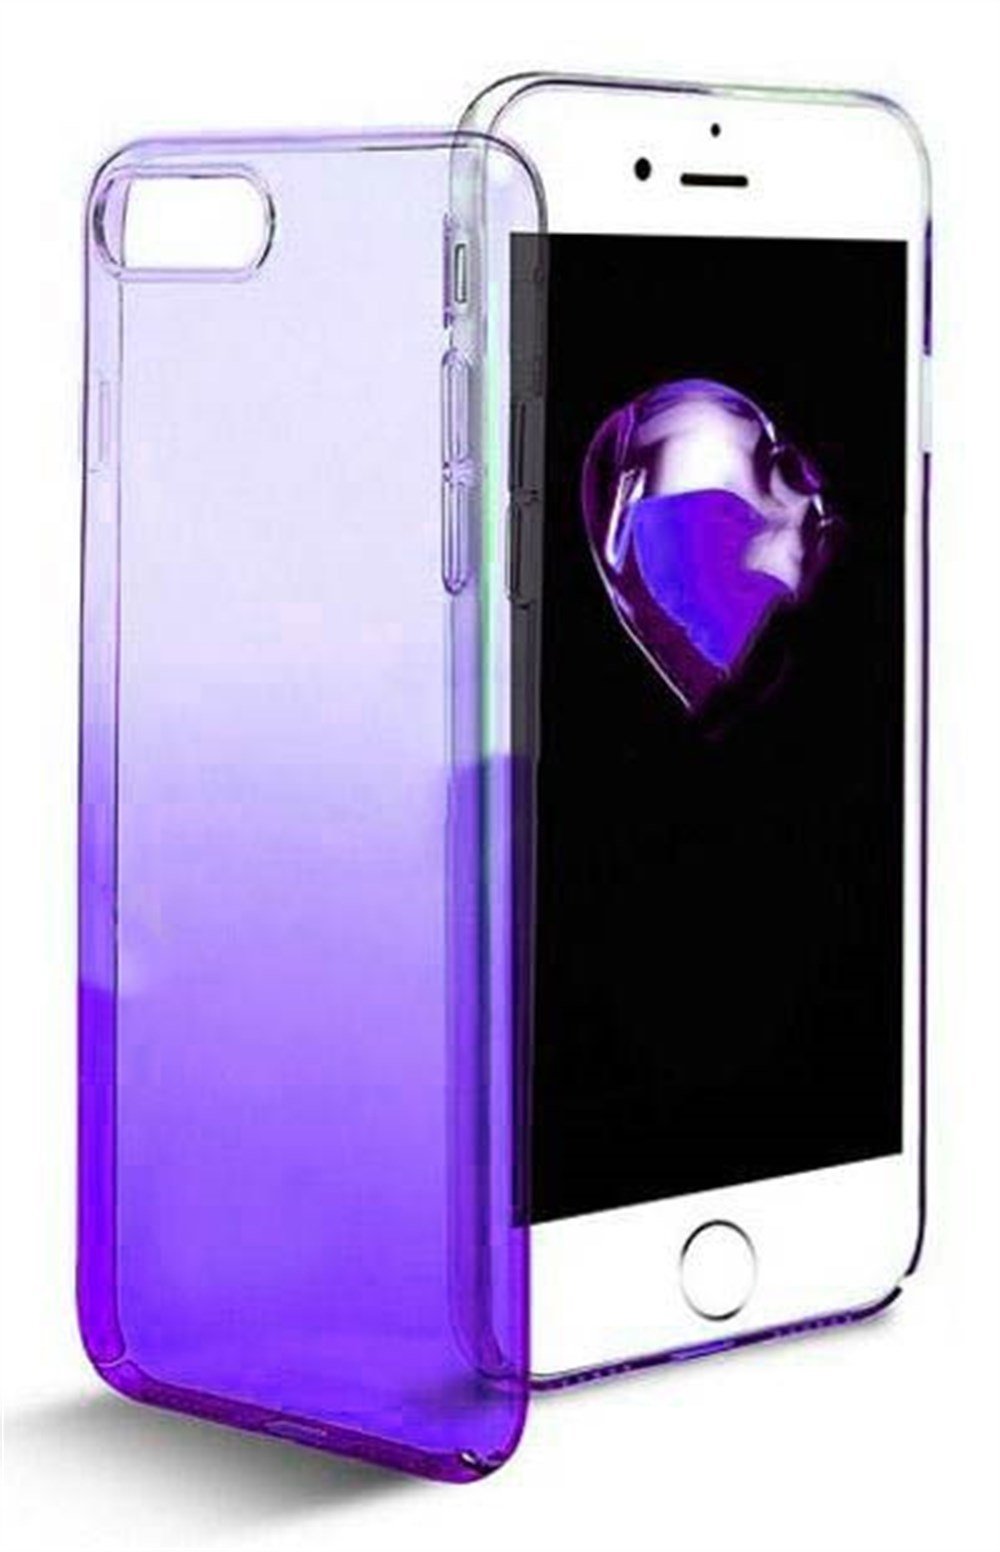 iPhone 6 6S Renk Geçişli Kapak Mor Kılıf | Ücretsiz Kargo